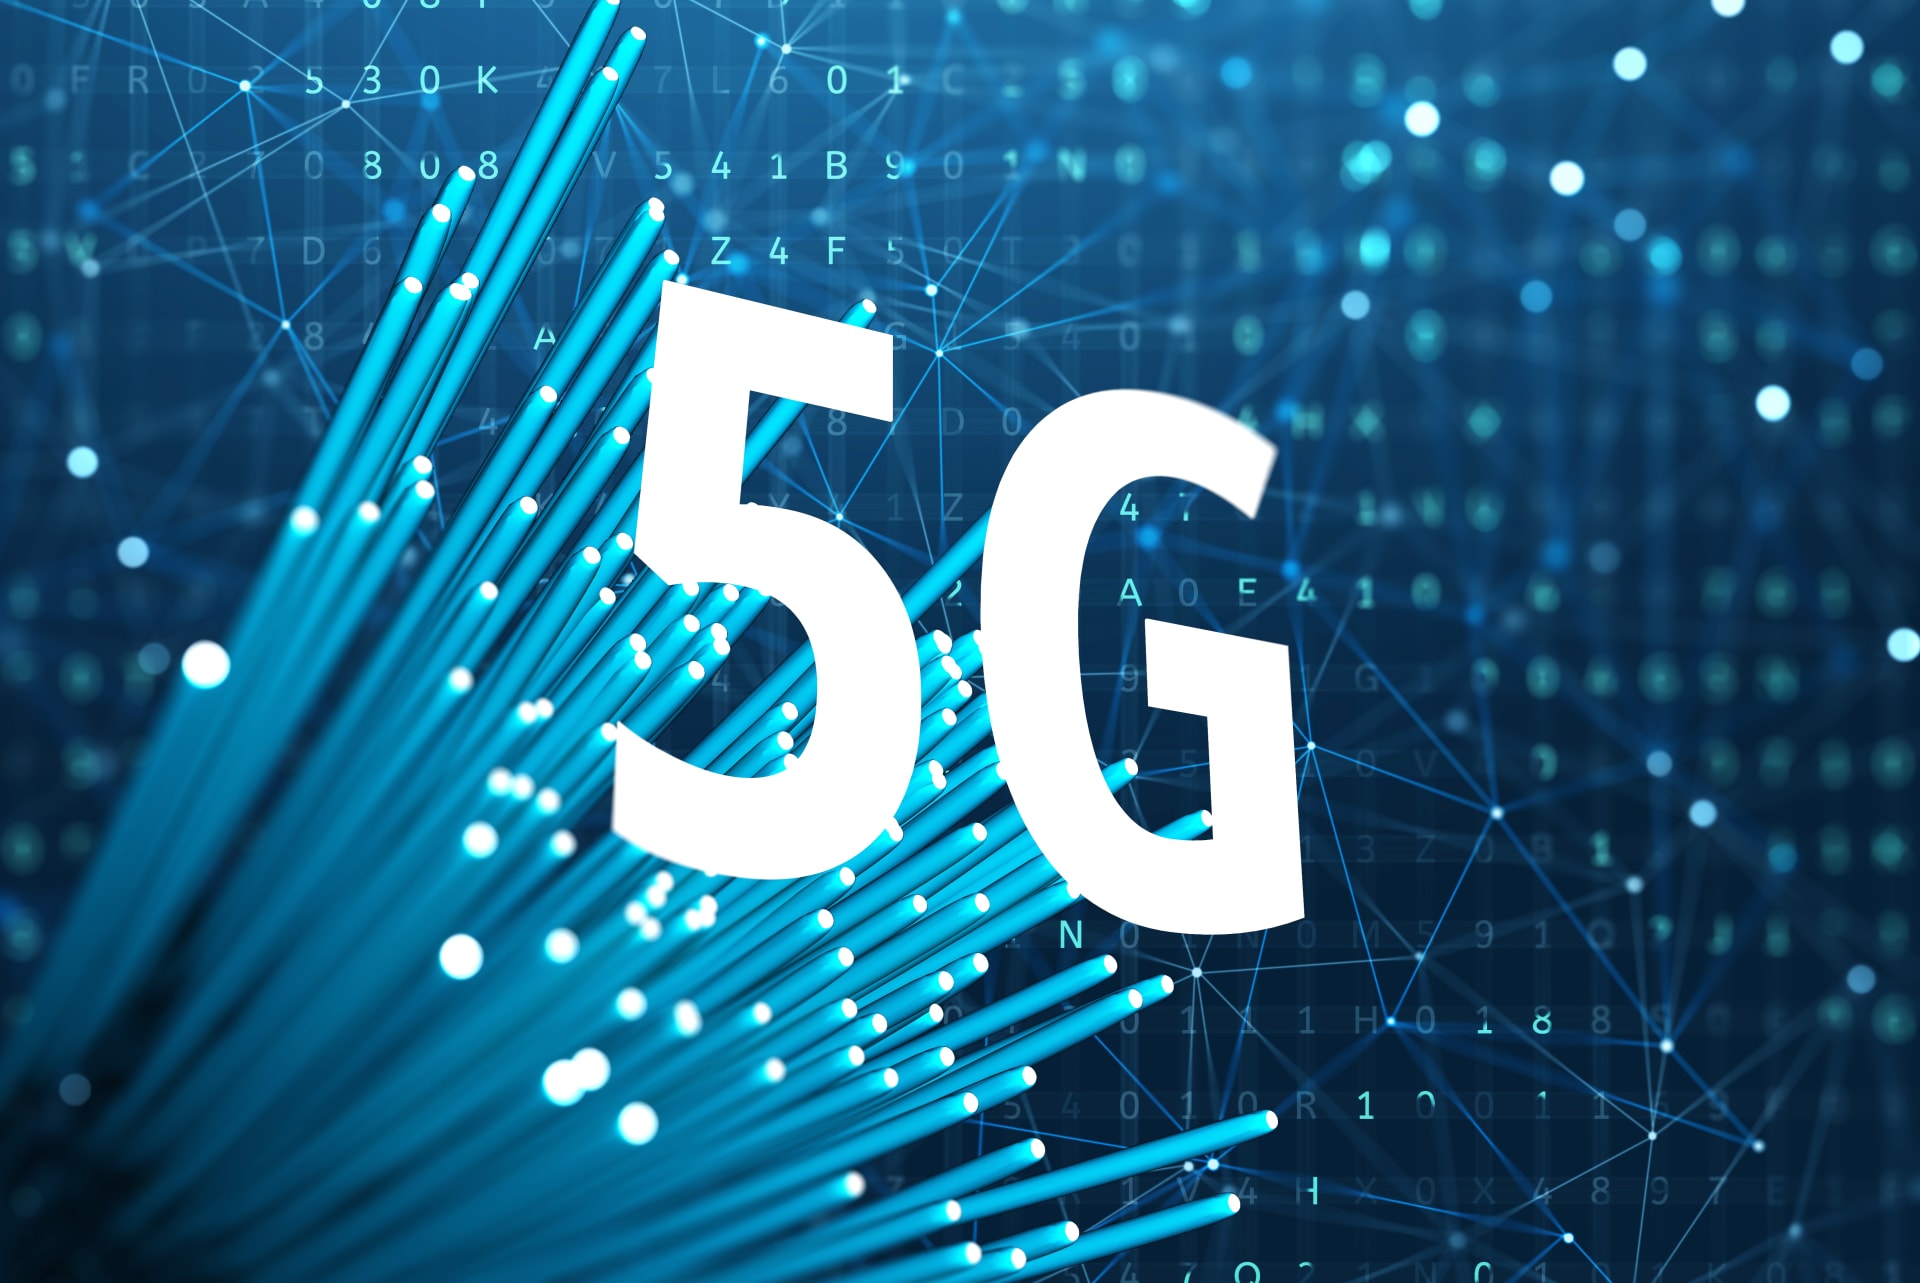 5G sítě najdou využití především v průmyslovém užití